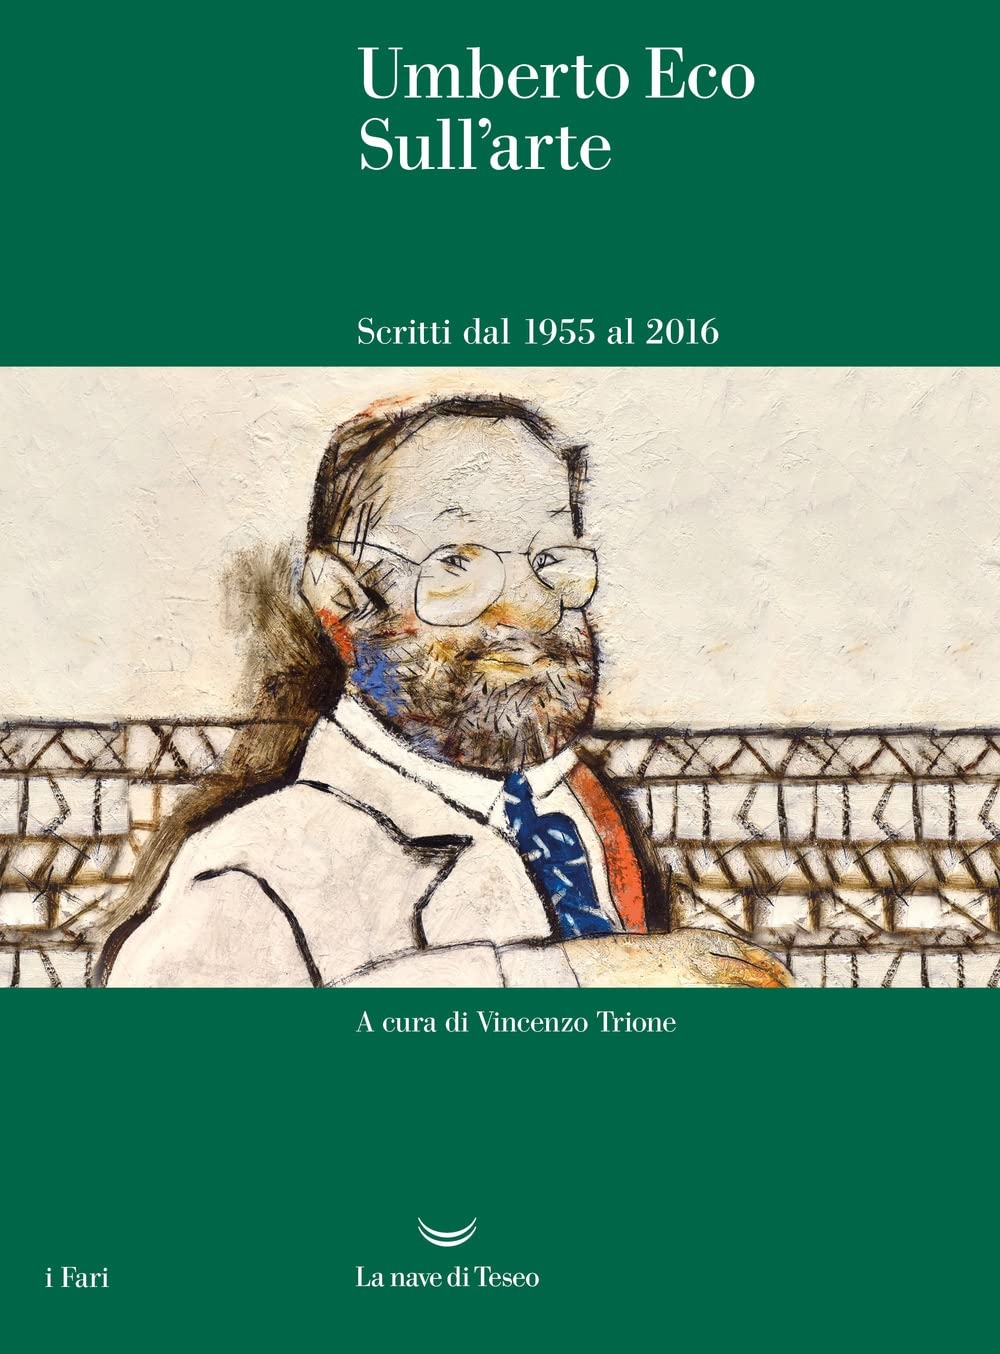 Umberto Eco – Sull’arte. Scritti dal 1955 al 2016 (La nave di Teseo, Milano 2022)